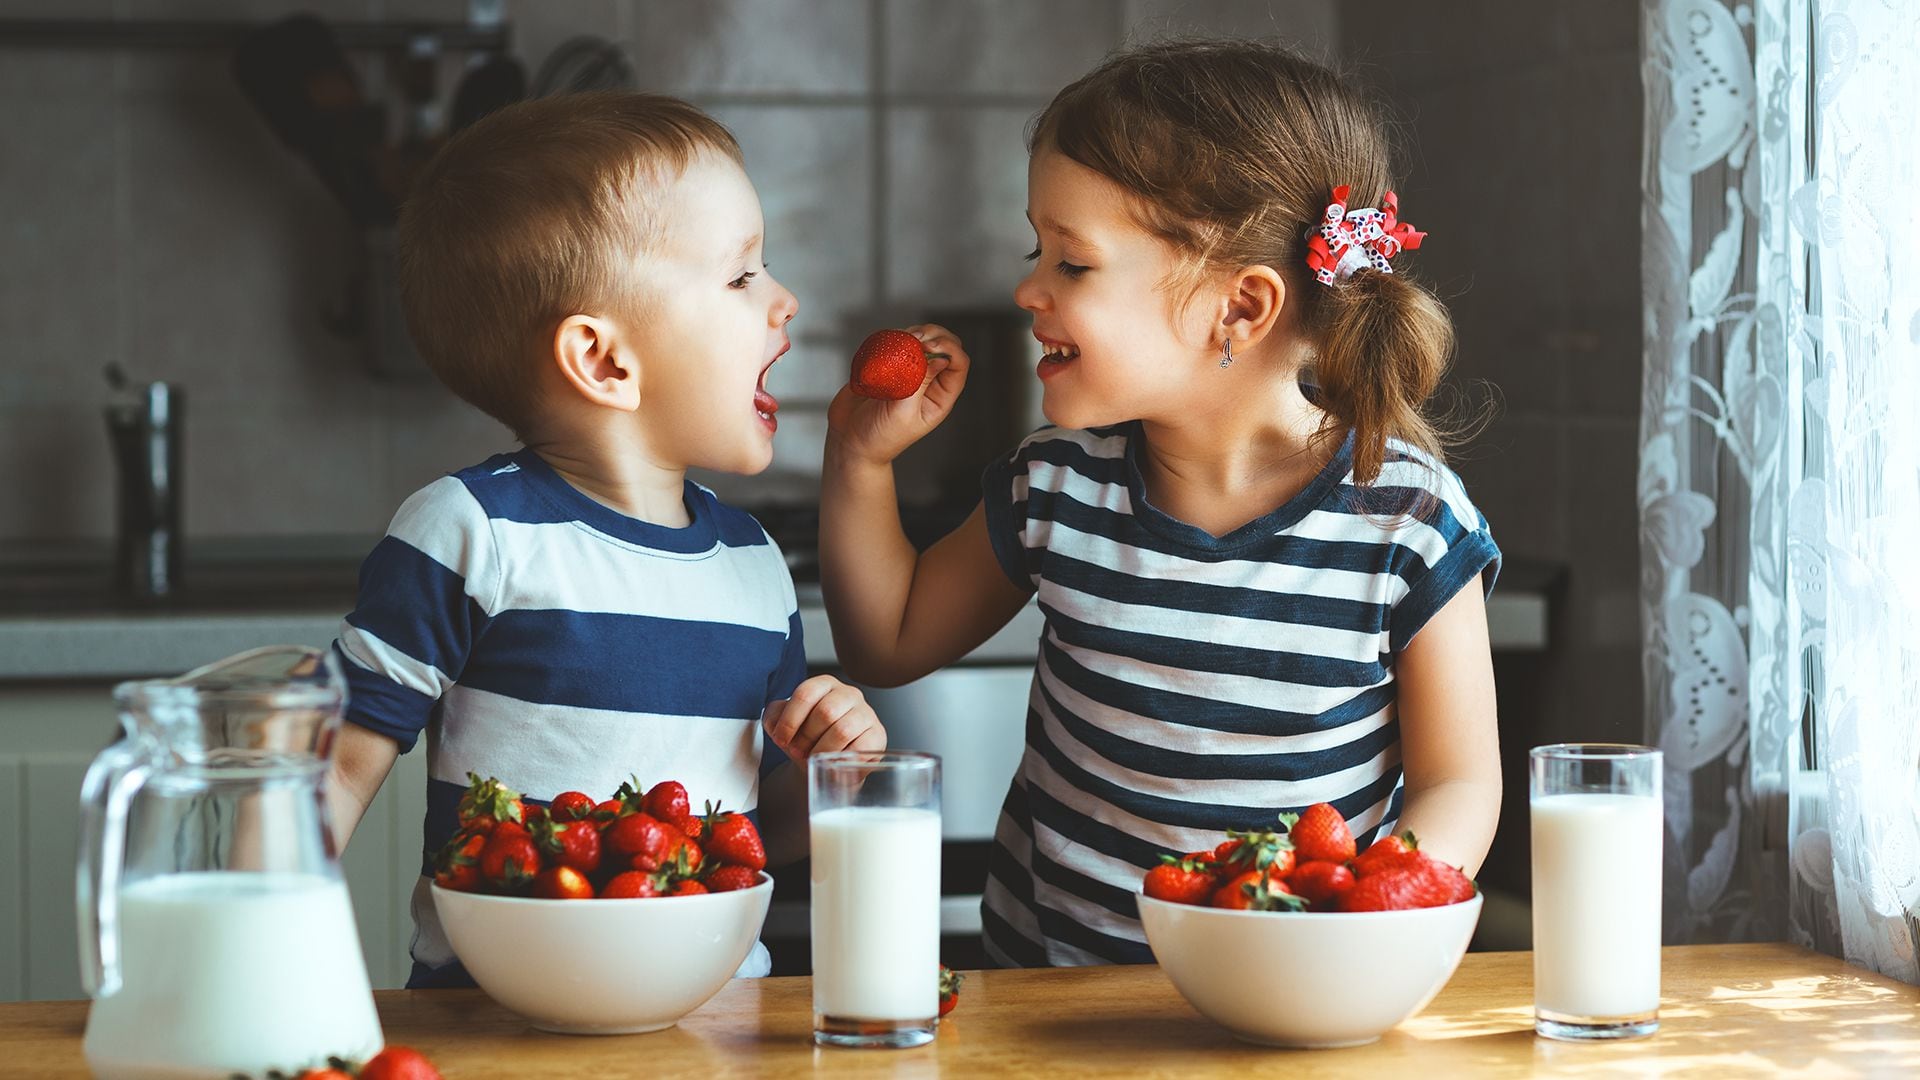 Las guías alimentarias recomiendan que los niños y las niñas consuman más frutas y verduras, lácteos, cereales integrales, legumbres, carnes, y huevos, entre otros